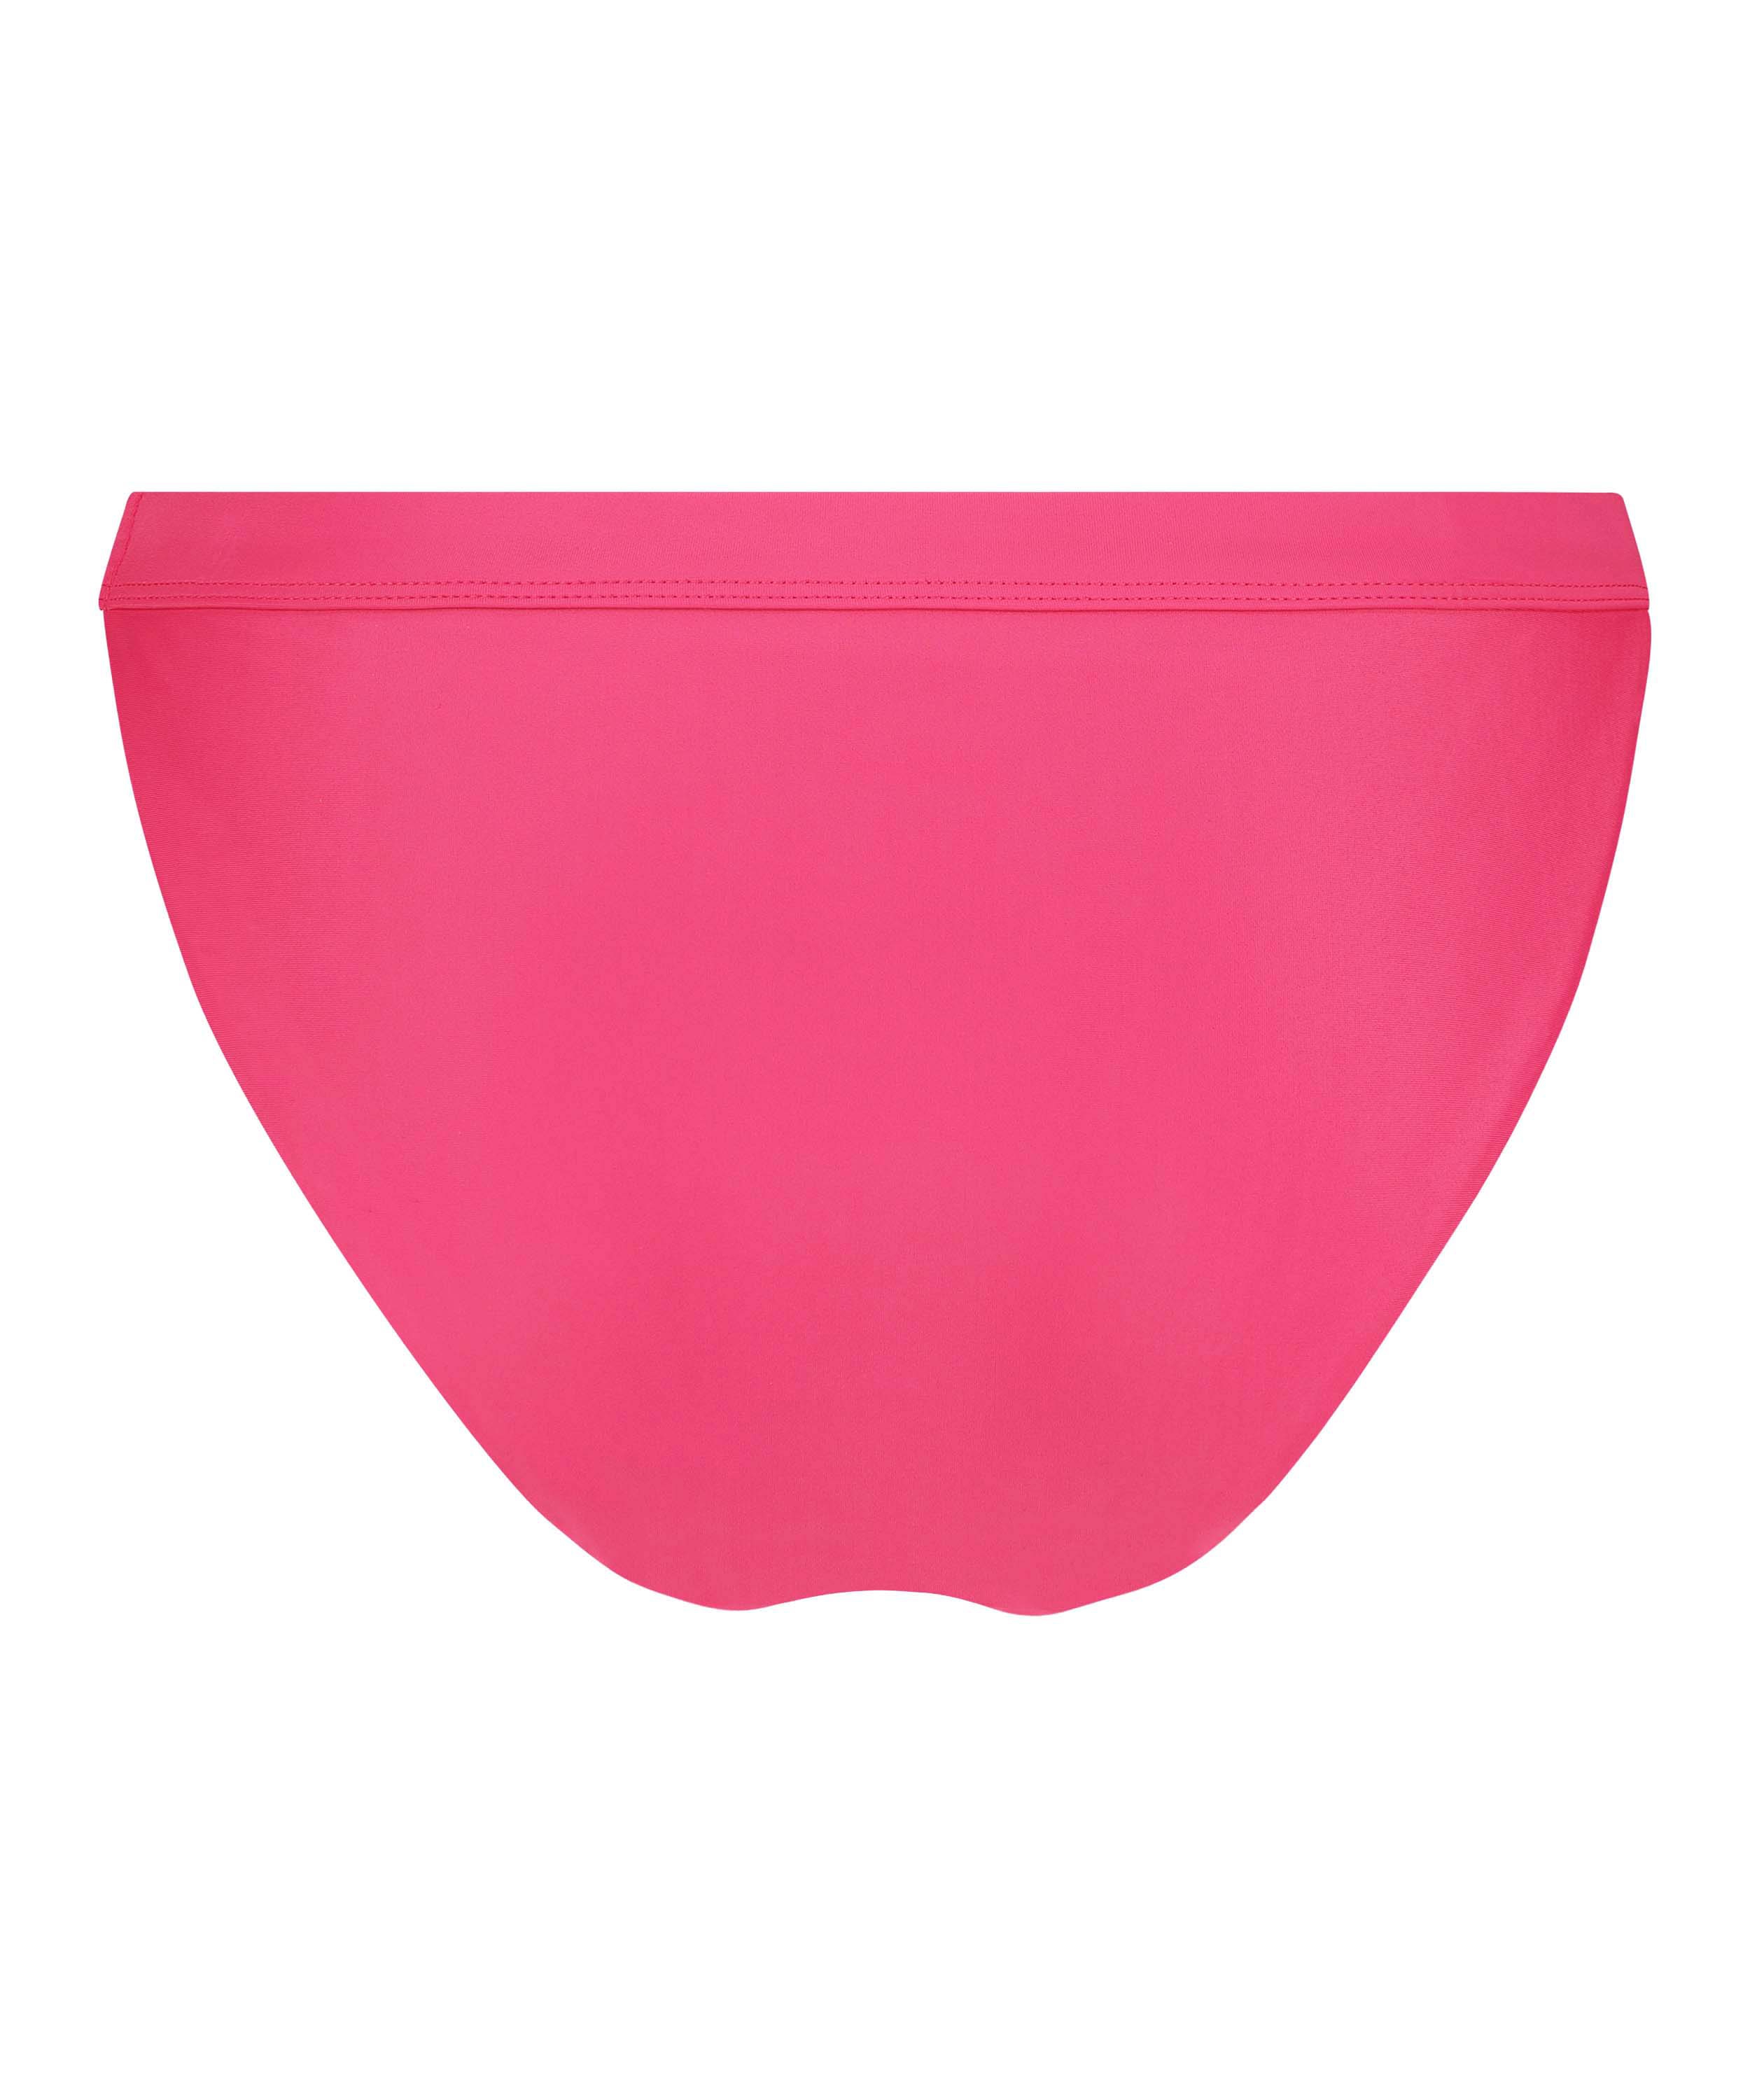 Bikinitrusse Ibiza, pink, main